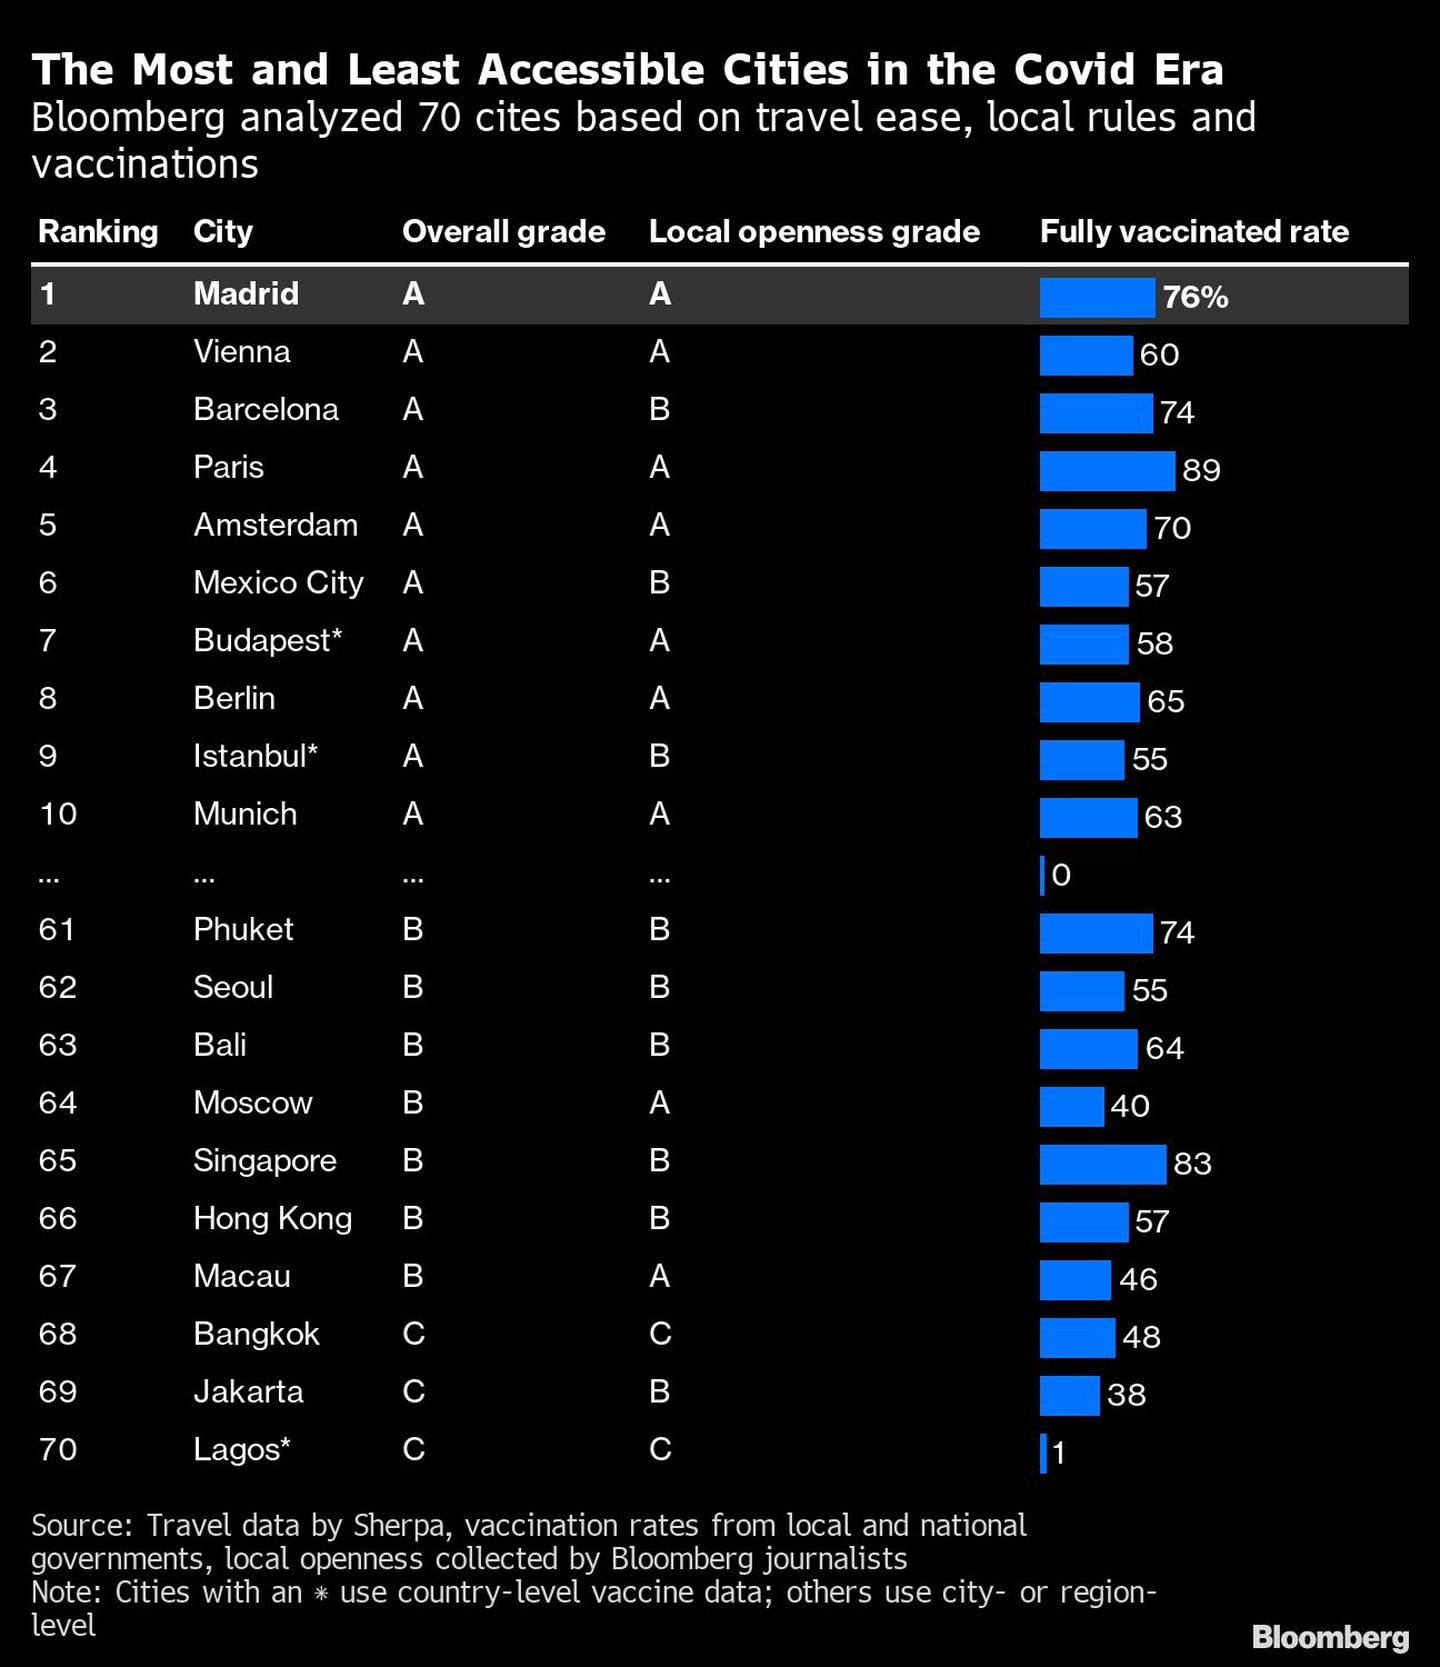 Las ciudades más y menos accesibles en la era Covid-19
Bloomberg ha analizado 70 ciudades en función de la facilidad para viajar, las normas locales y las vacunas.dfd